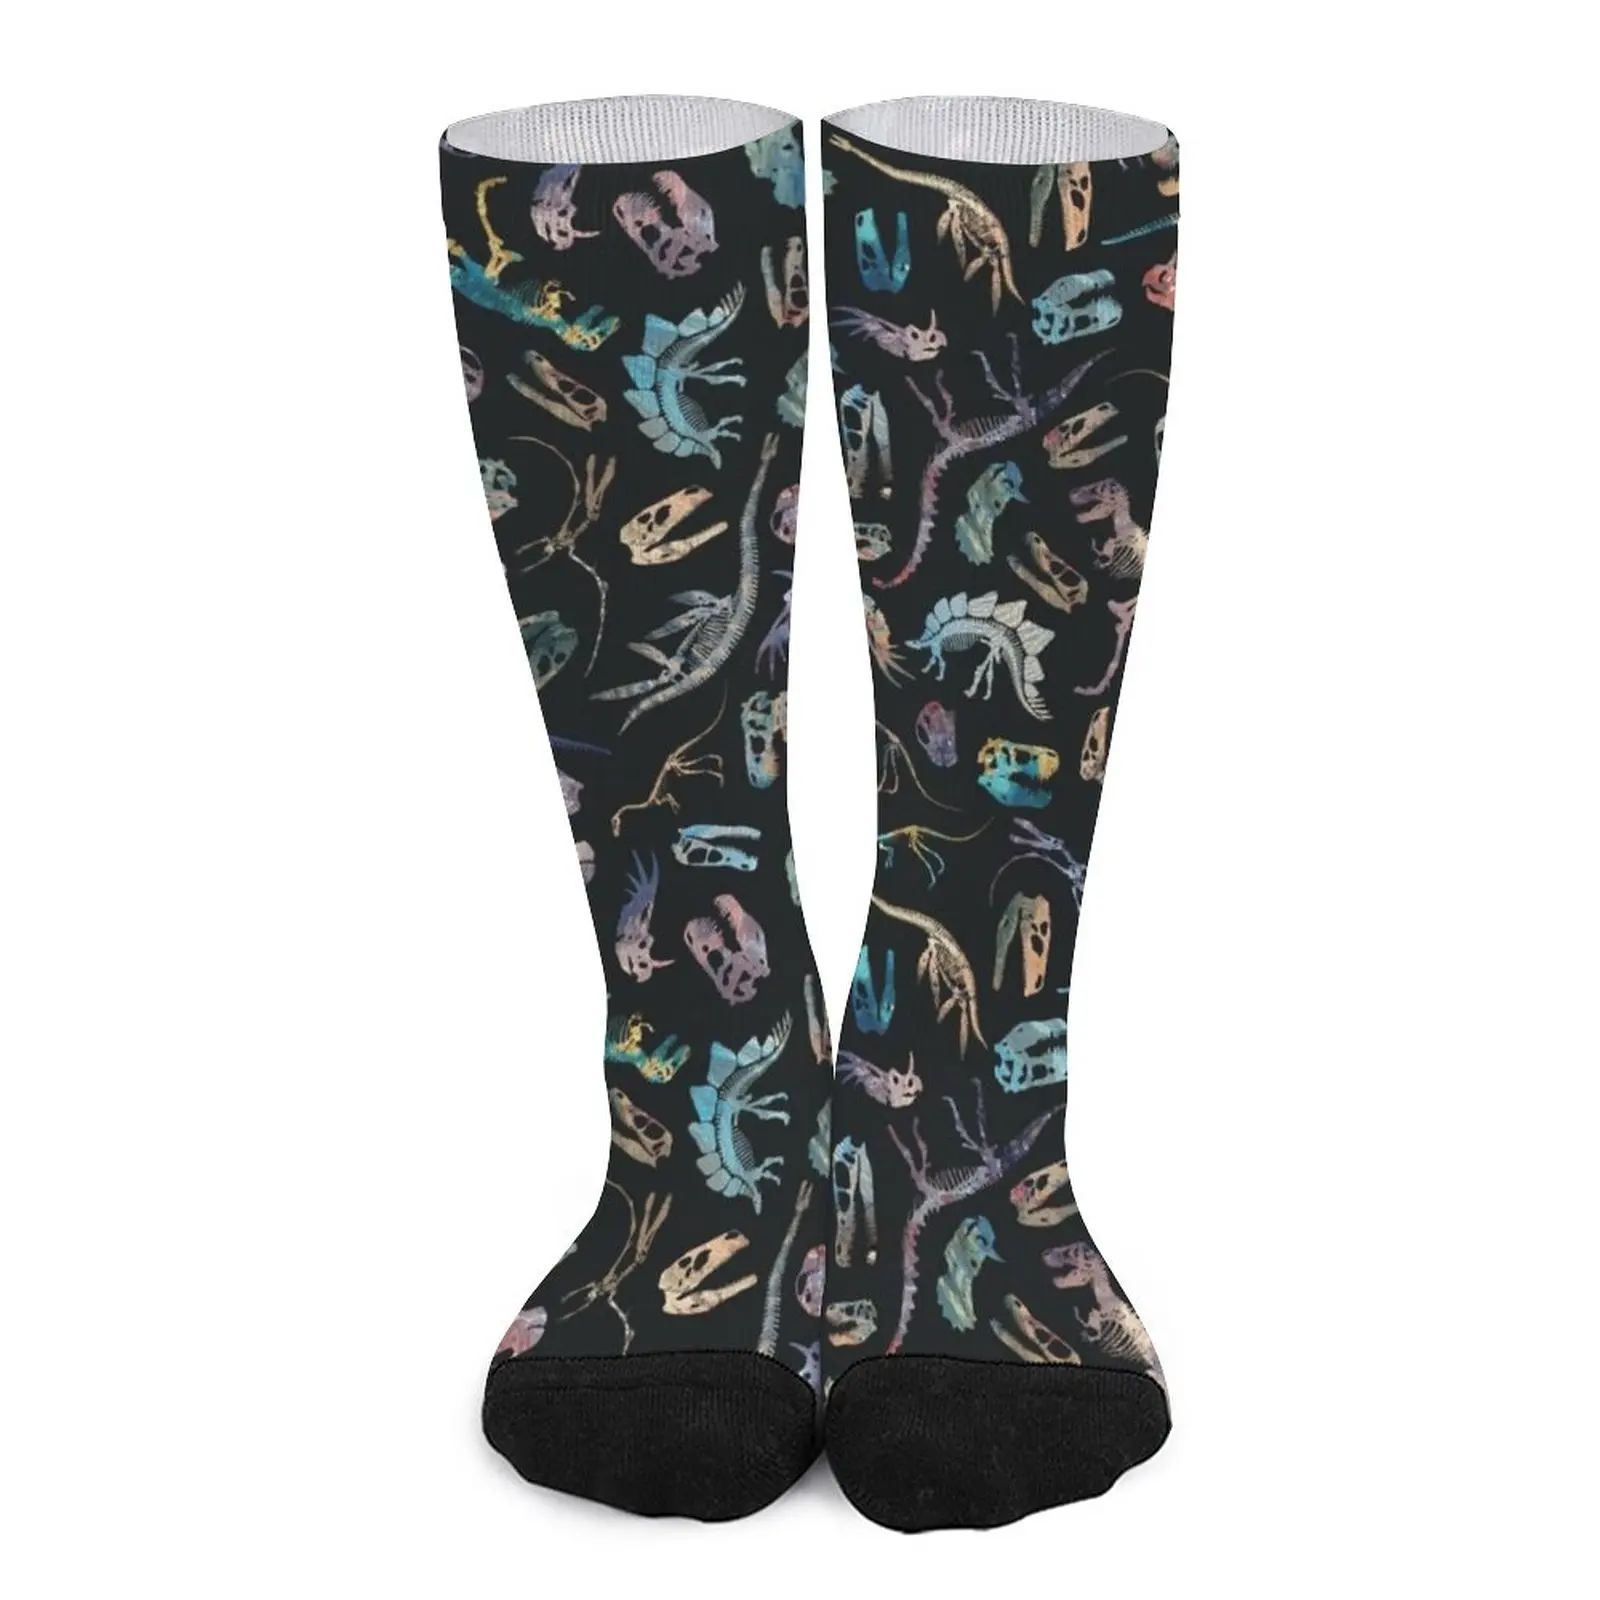 Dinosaurs (Dark) Socks custom socks Men sock Christmas funny socks for men